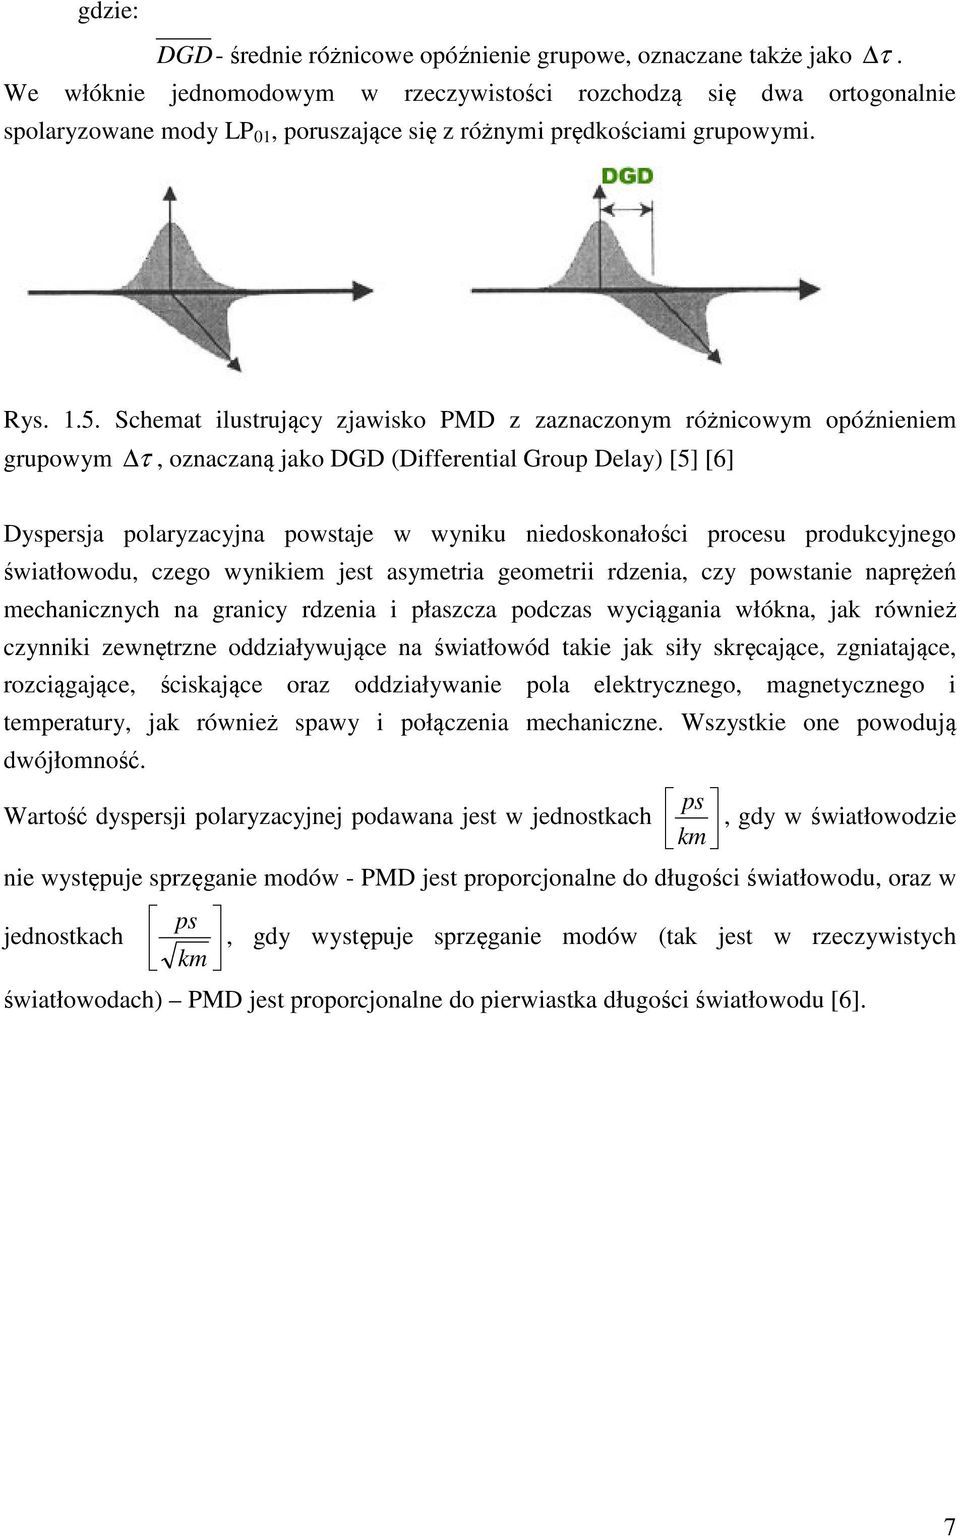 Schemat ilustrujący zjawisko PMD z zaznaczonym różnicowym opóźnieniem grupowym τ, oznaczaną jako DGD (Differential Group Delay) [5] [6] Dyspersja polaryzacyjna powstaje w wyniku niedoskonałości